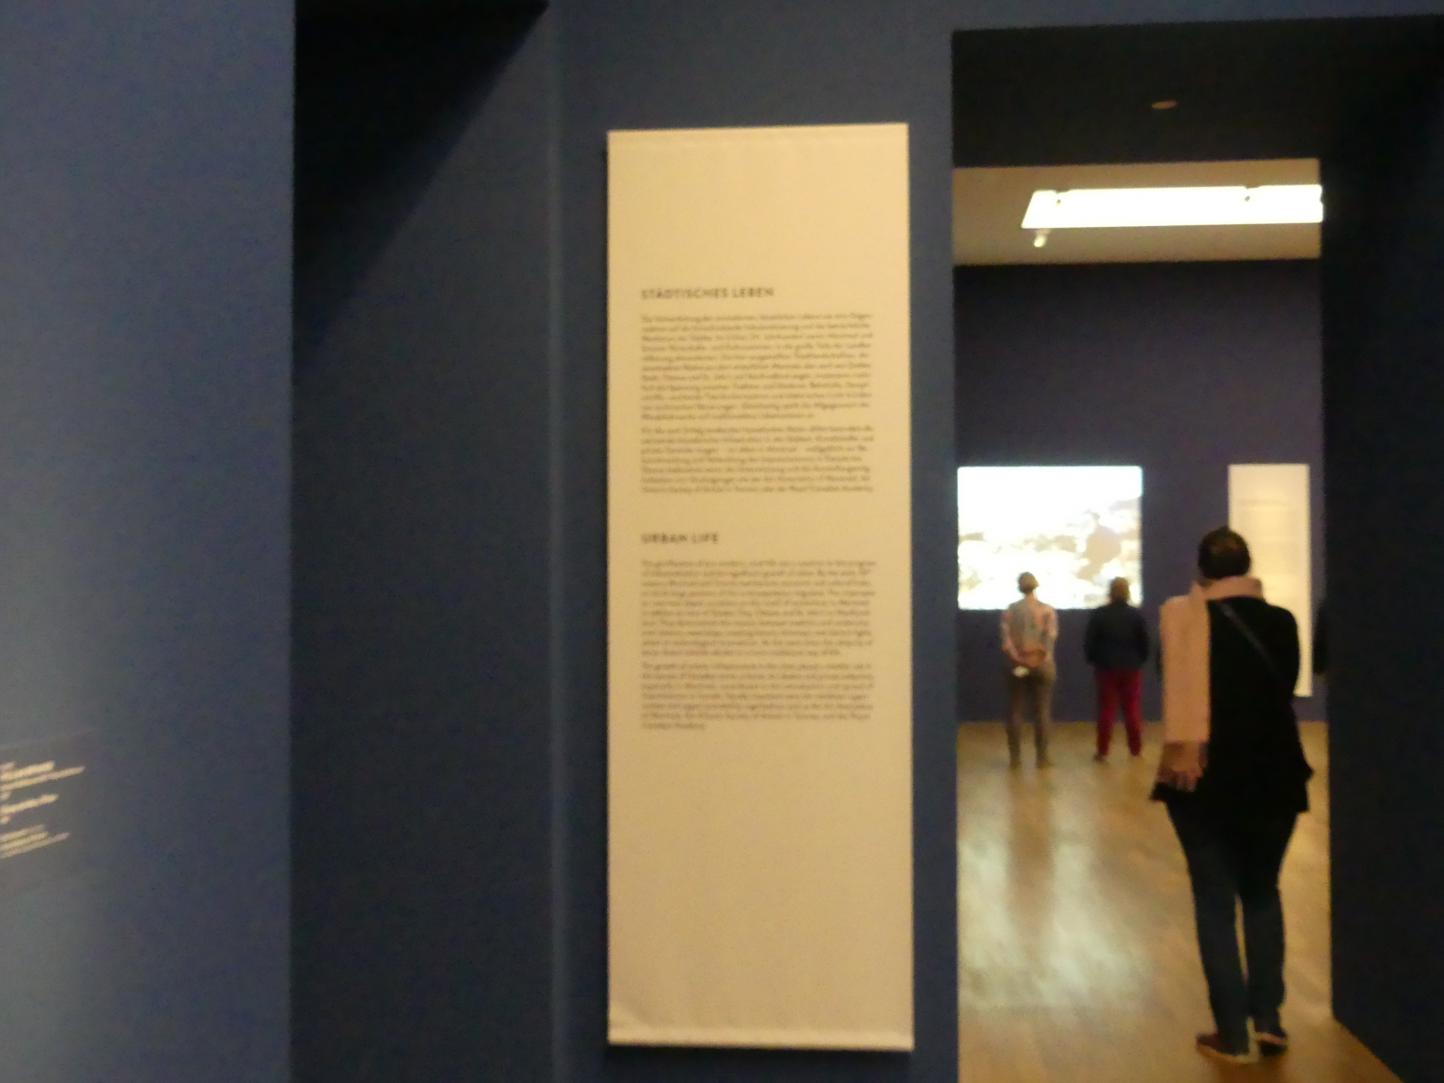 München, Kunsthalle, Ausstellung "Kanada und der Impressionismus" vom 19.07.-17.11.2019, Städtisches Leben, Bild 4/6